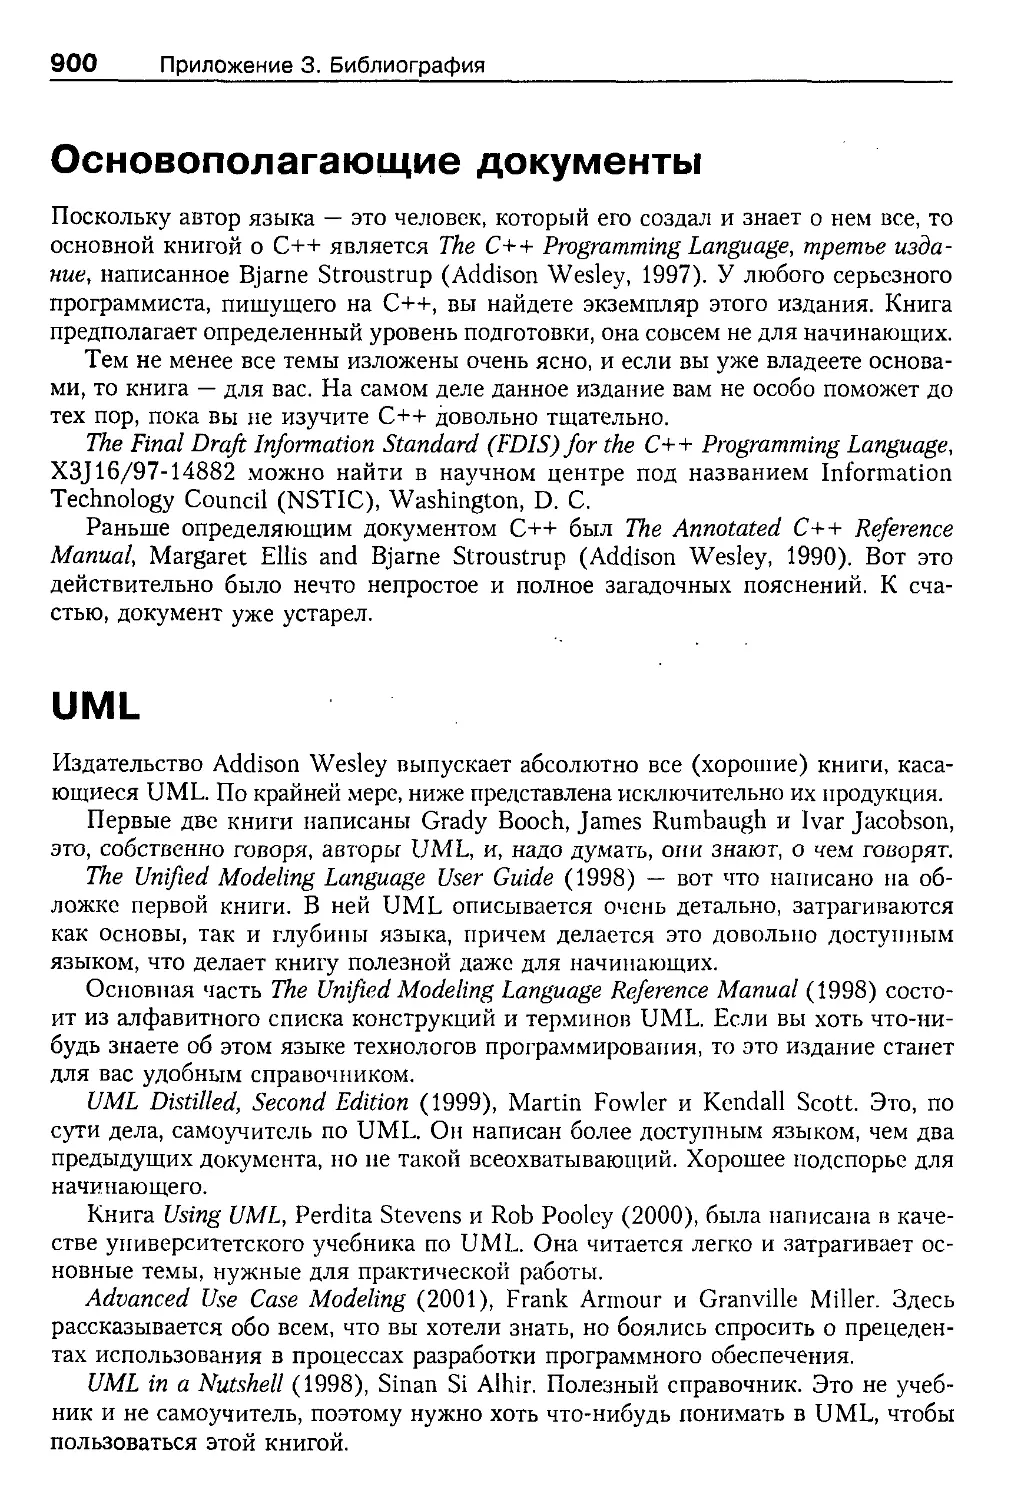 Основополагающие документы
UML